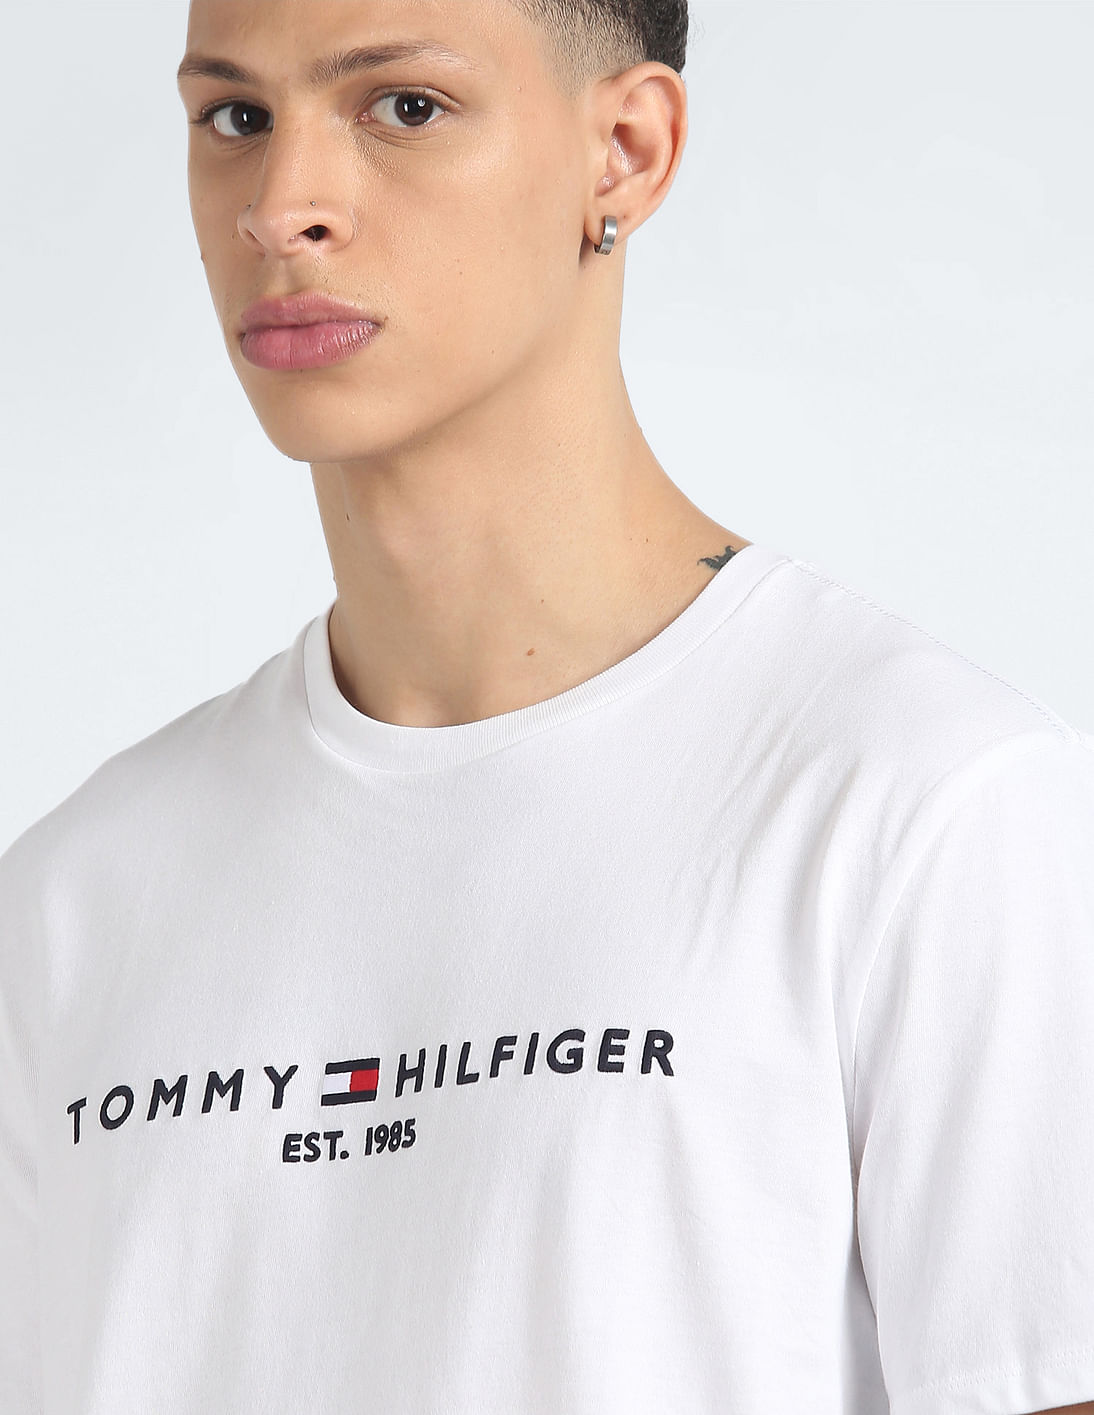 Buy T-Shirt Hilfiger Tommy Embroidered Regular Fit Logo